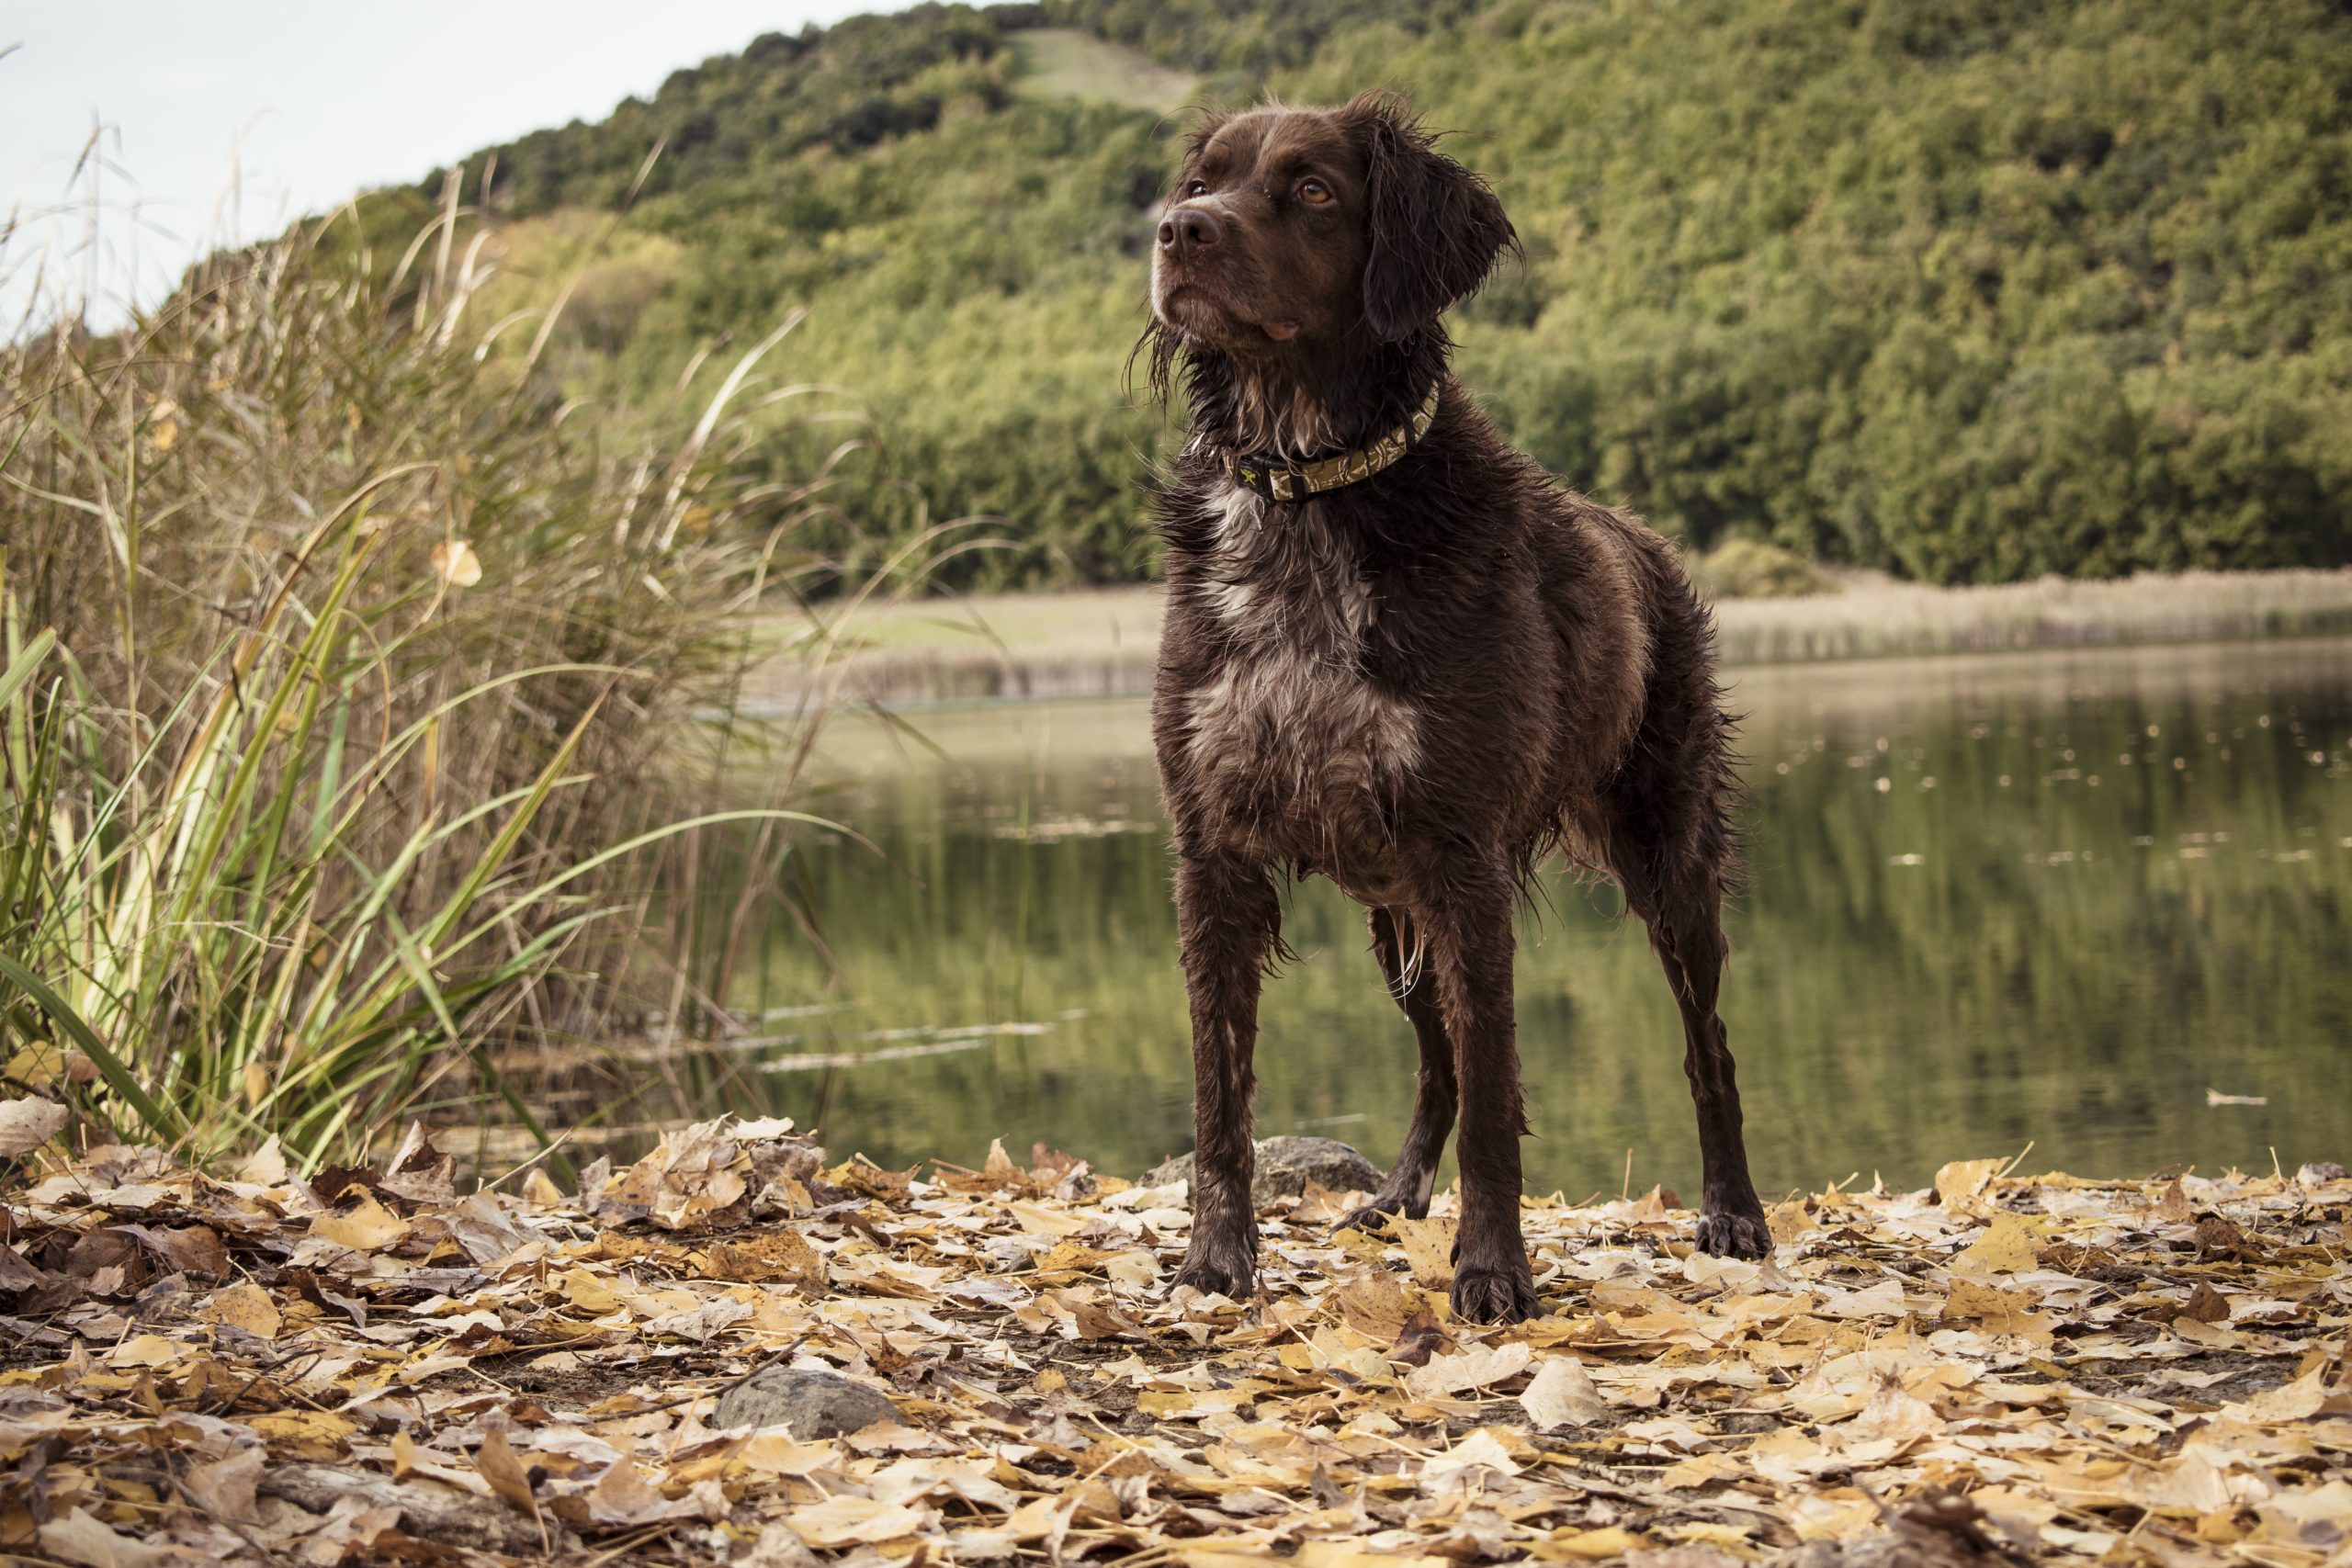 Jagdhund steht am Ufer eines Sees und schaut in die Ferne.